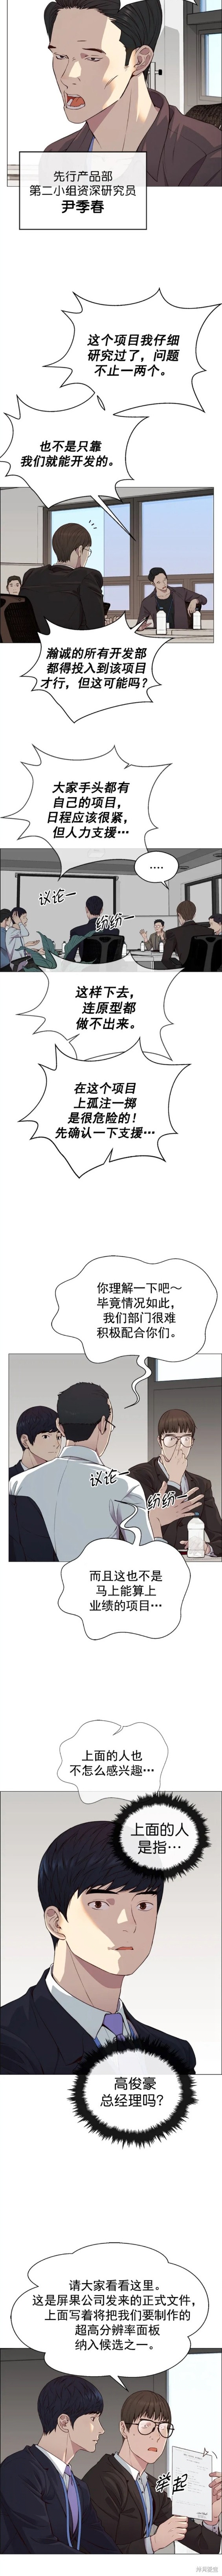 男子汉漫画,第139话5图